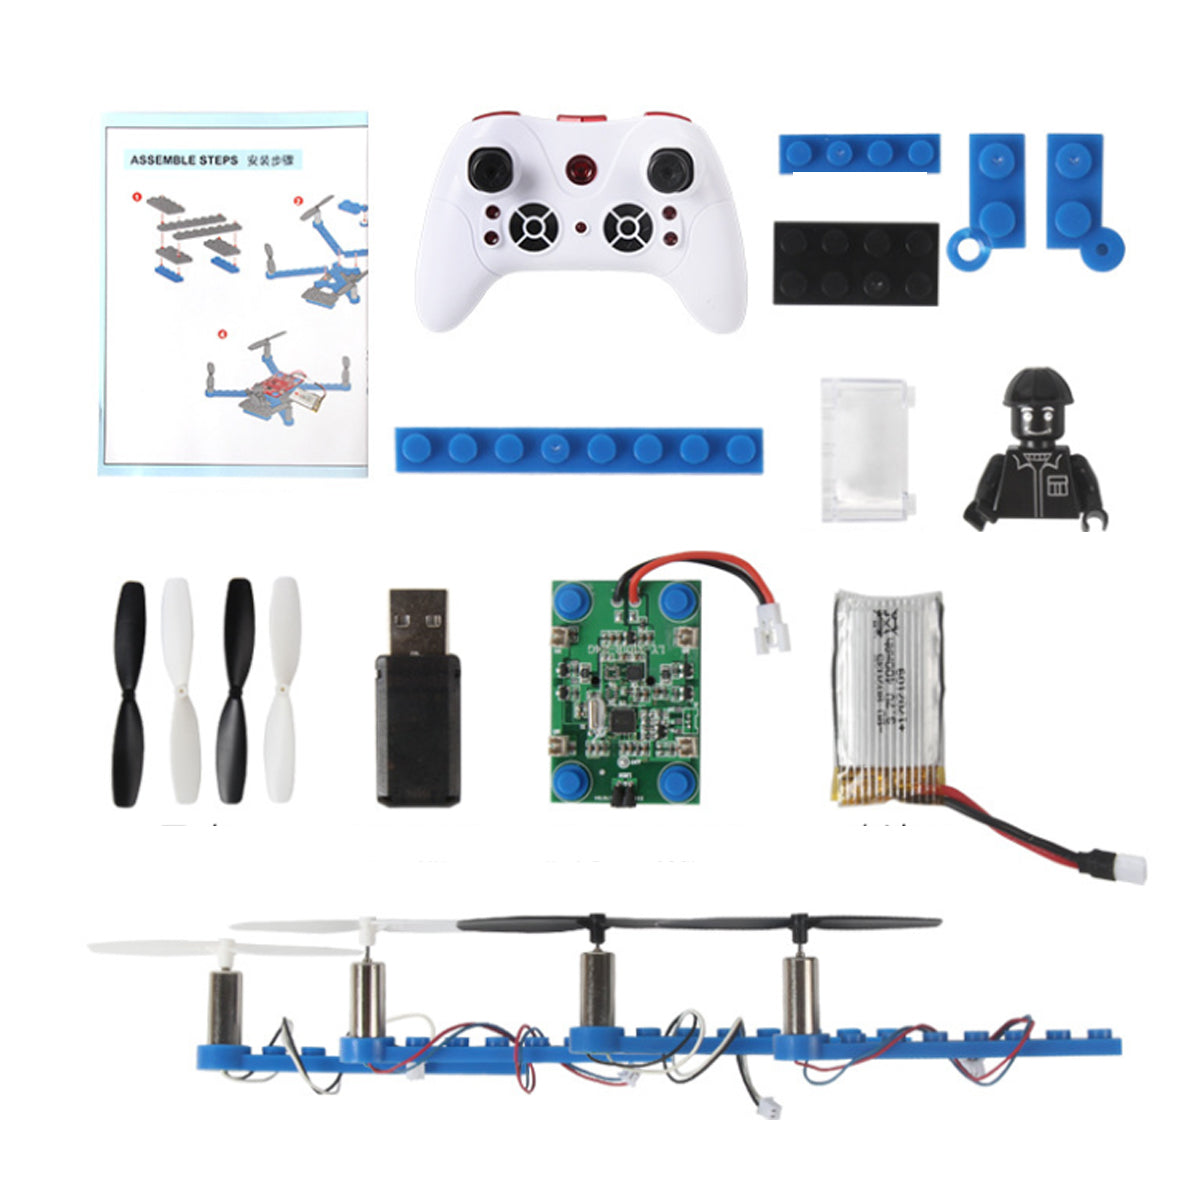 DIY Drone Building STEM Project For Kids Vista Shops